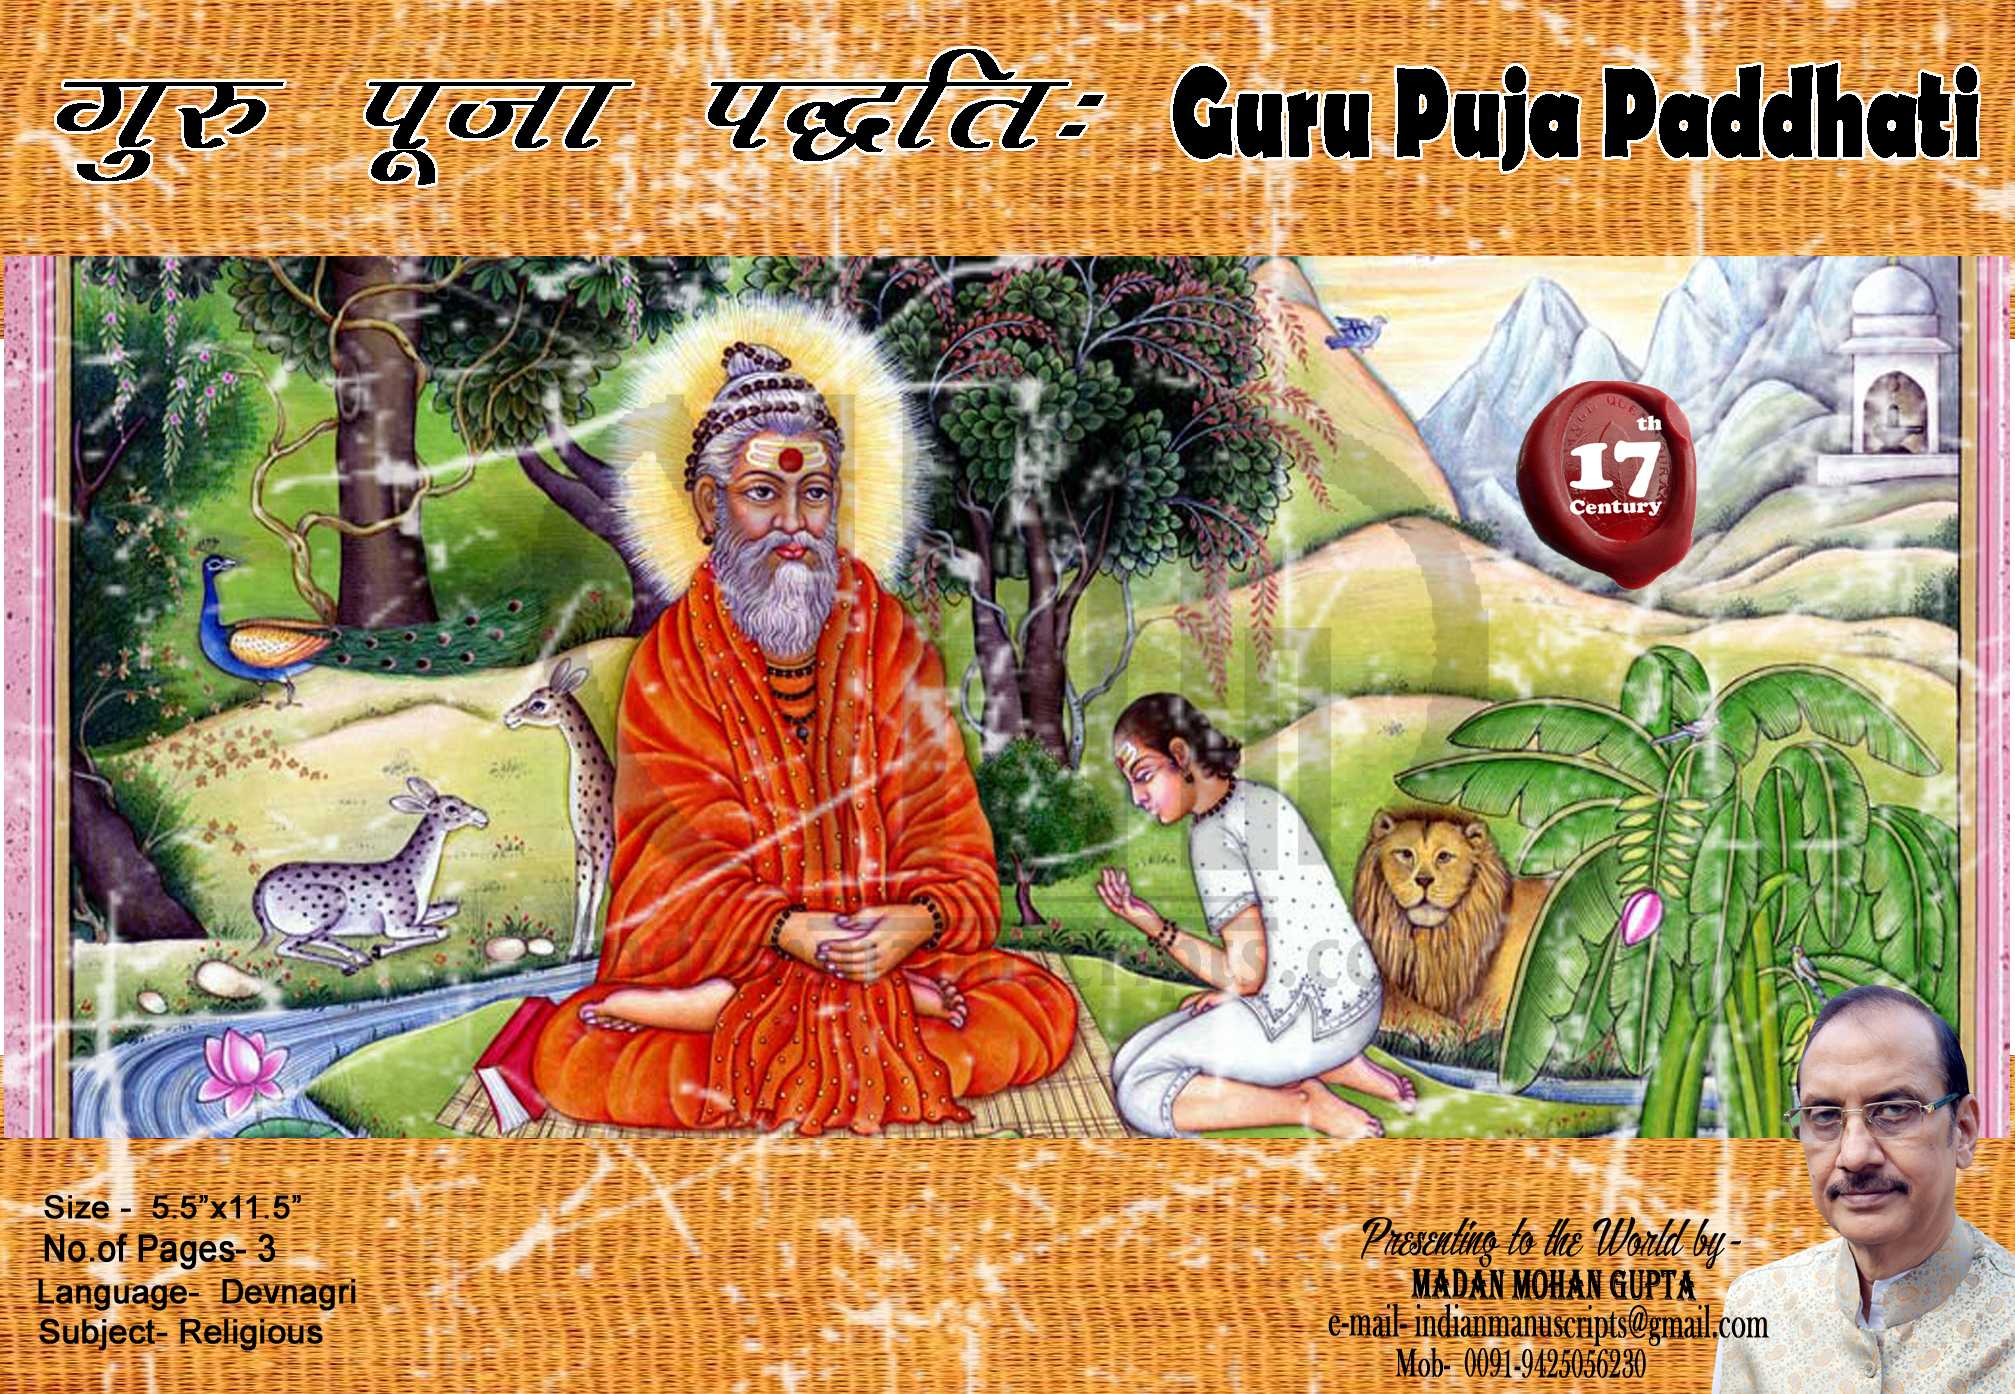 Guru Puja Paddhati